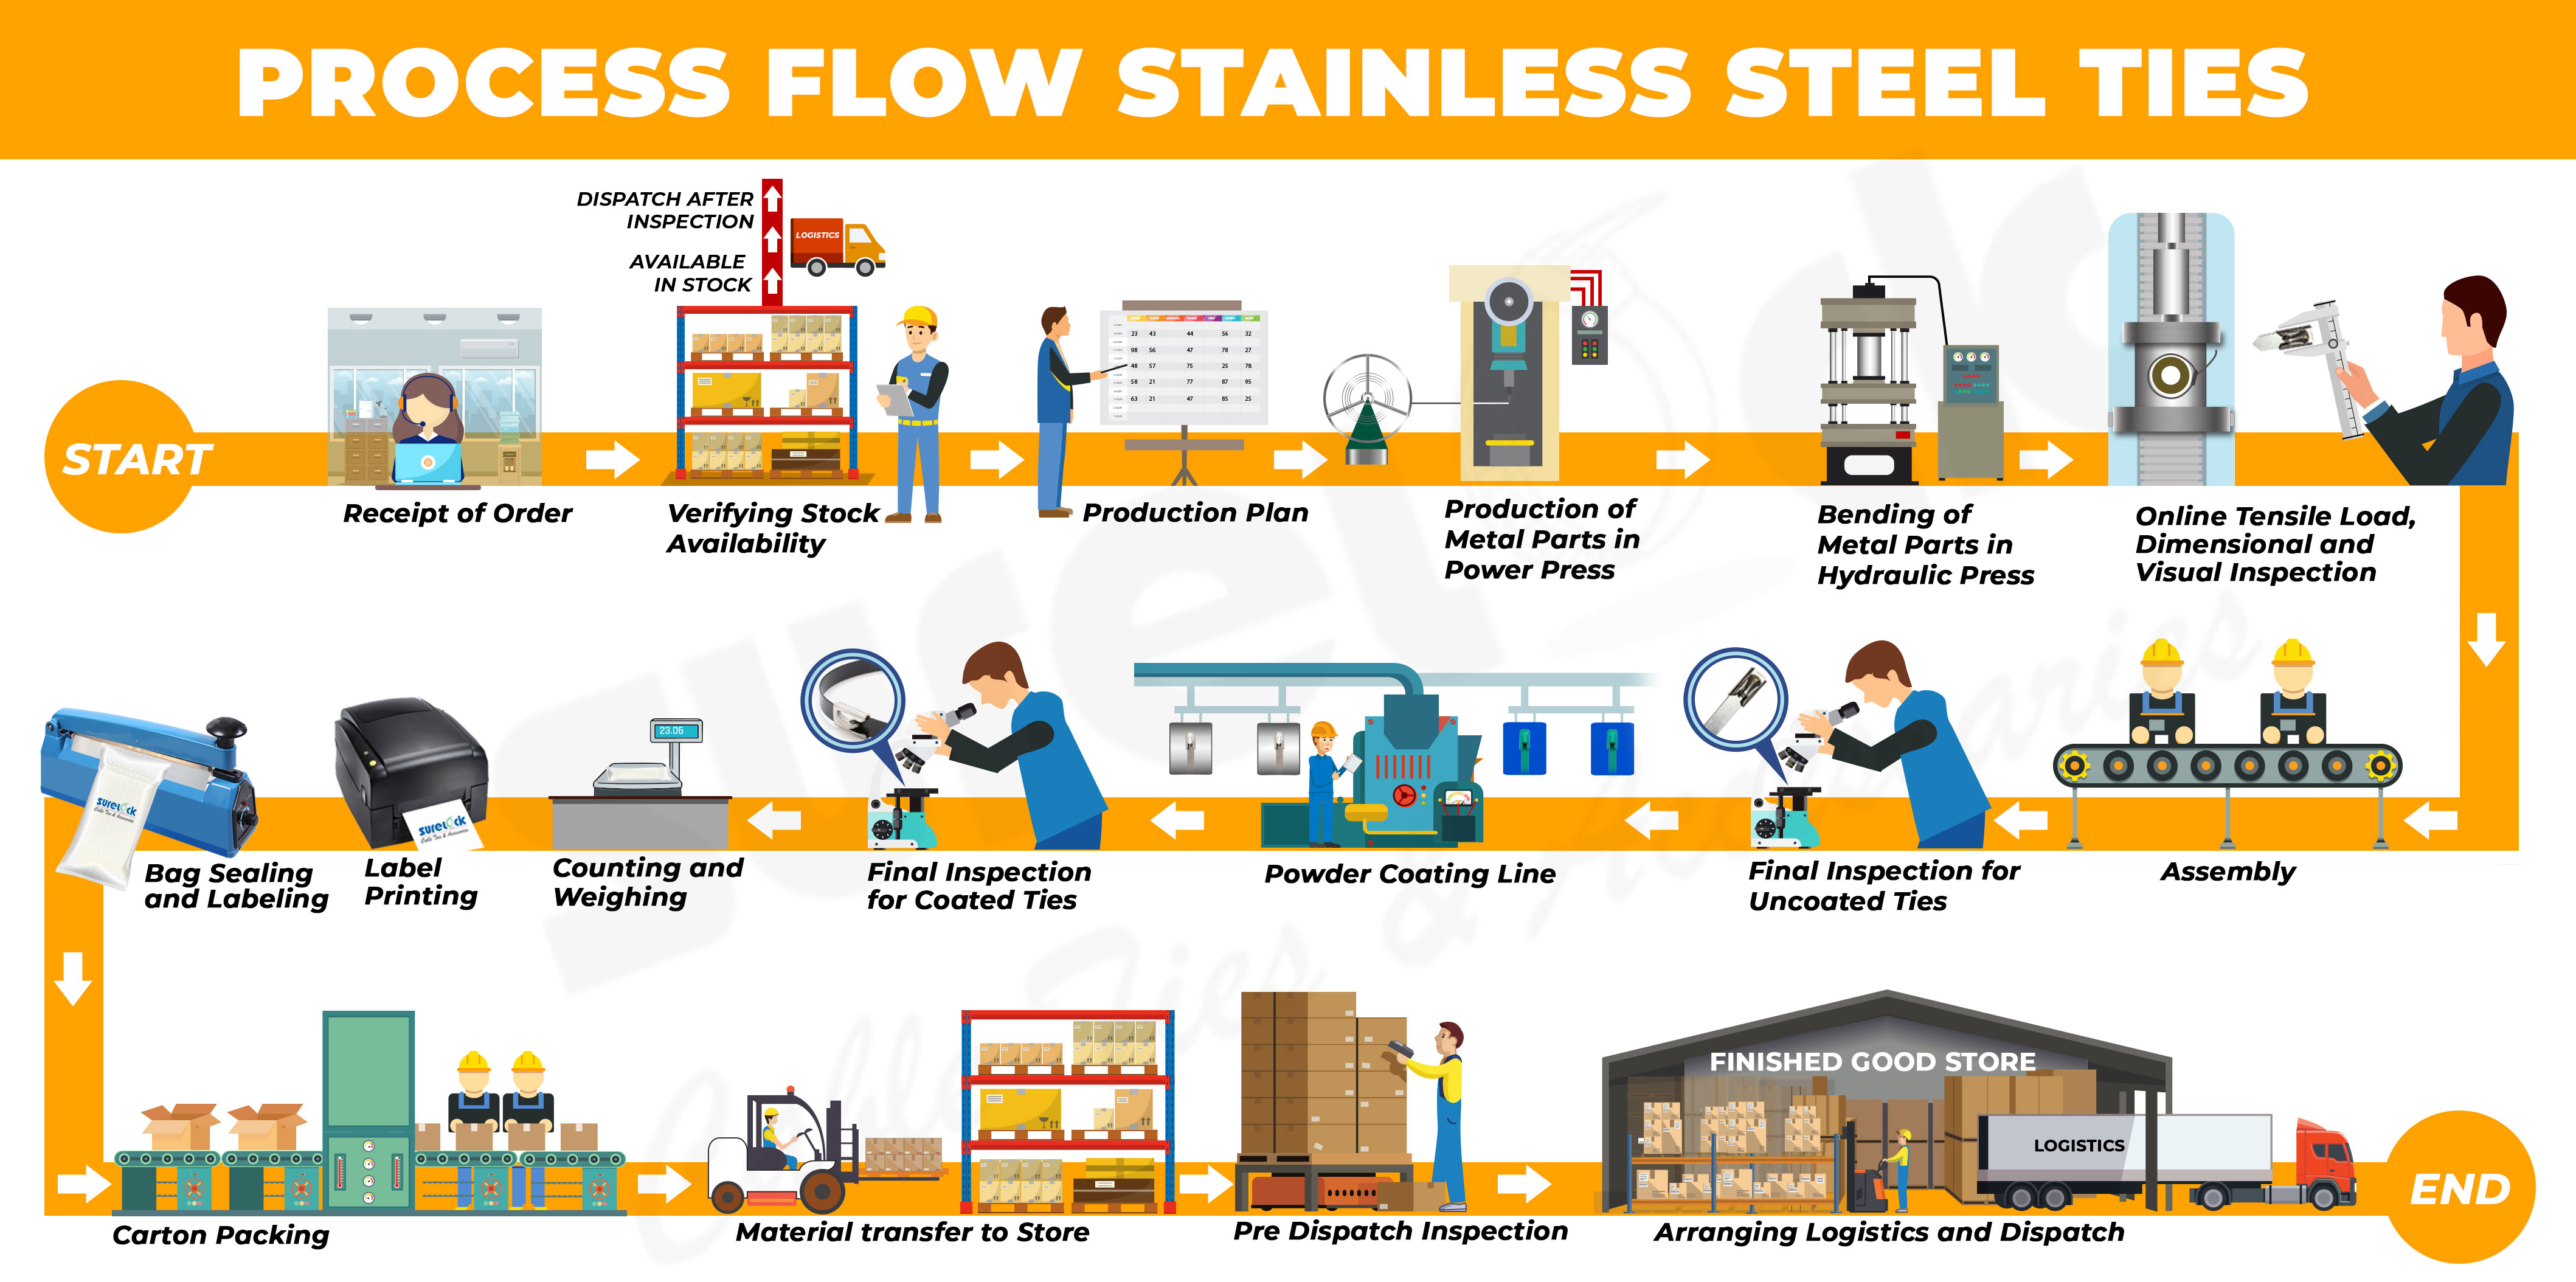 Stainless Steel Ties Process Flow